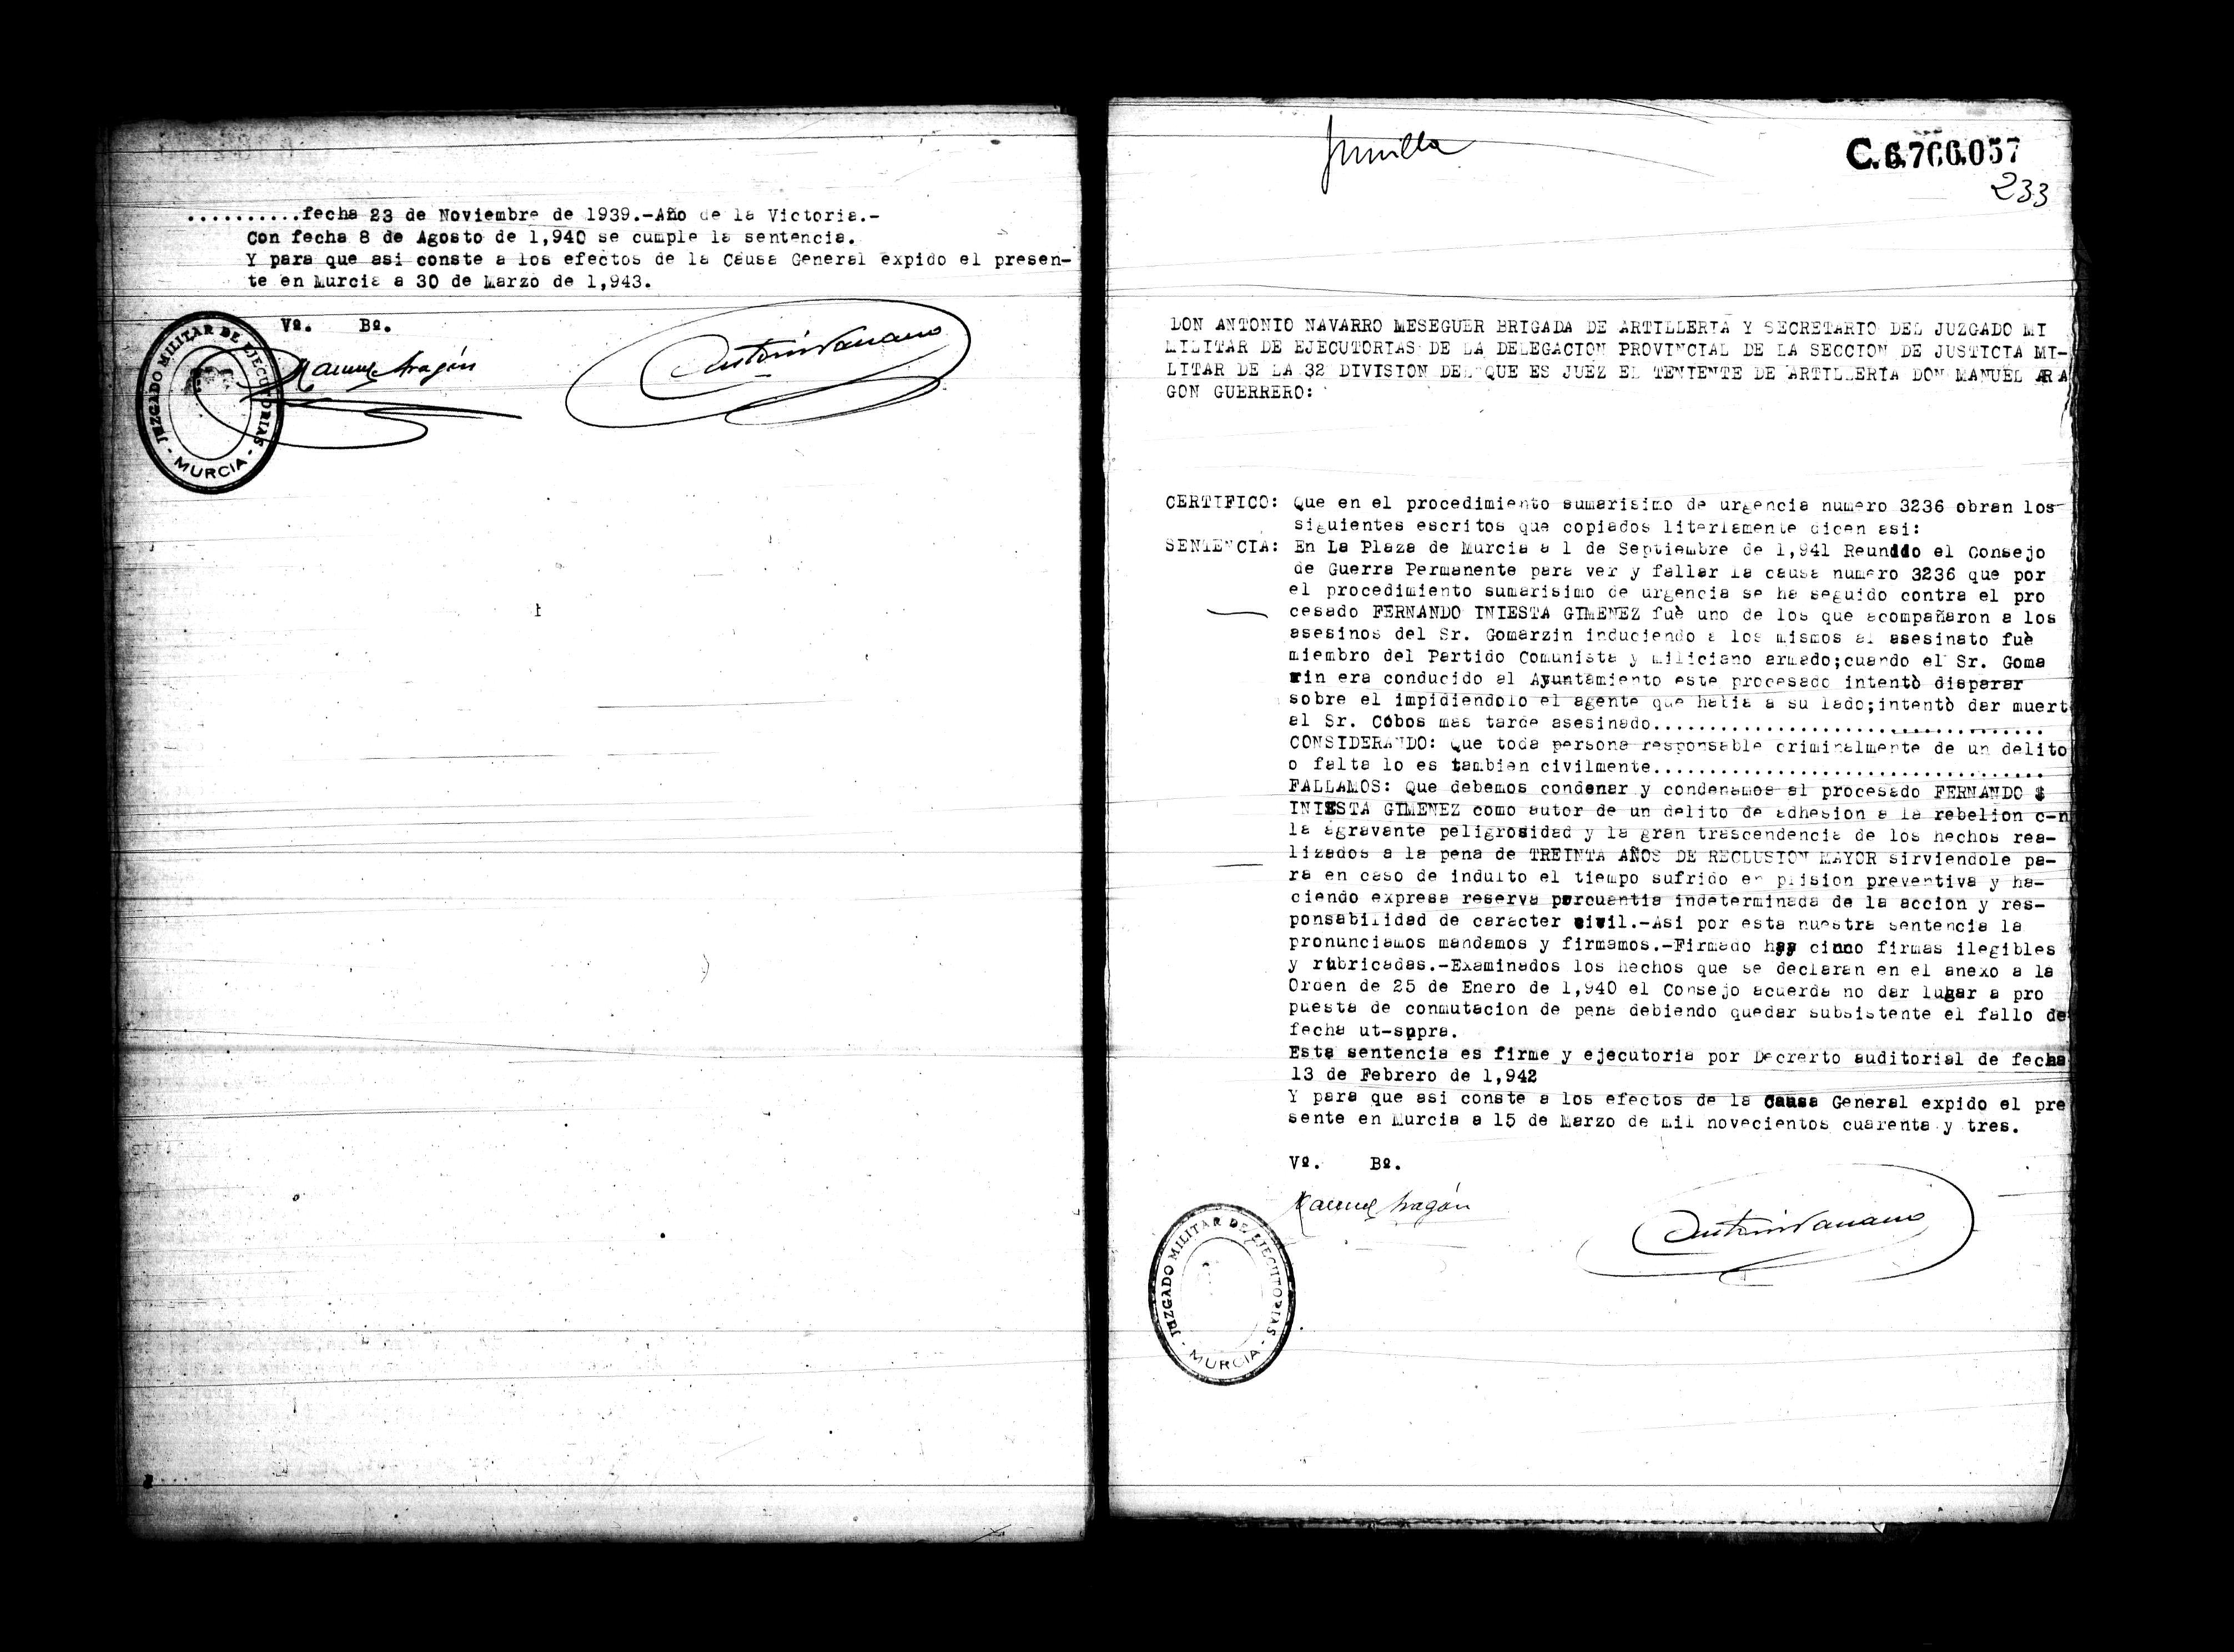 Certificado de la sentencia pronunciada contra Fernando Iniesta Giménez, causa 3236, el 1 de septiembre de 1941 en Murcia.